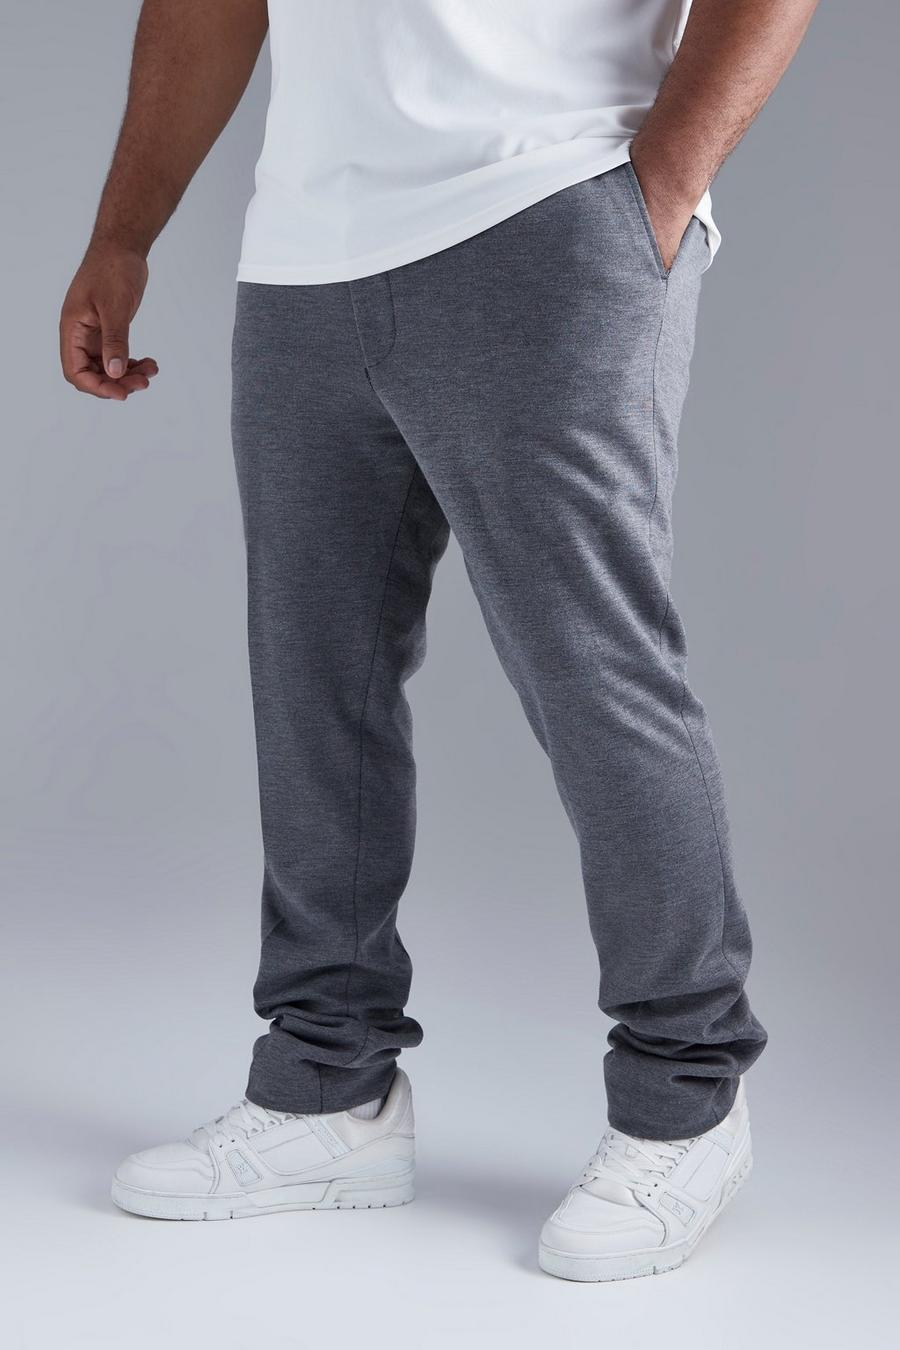 Pantalón Plus pitillo de tela jersey gruesa con cintura elástica, Grey grigio